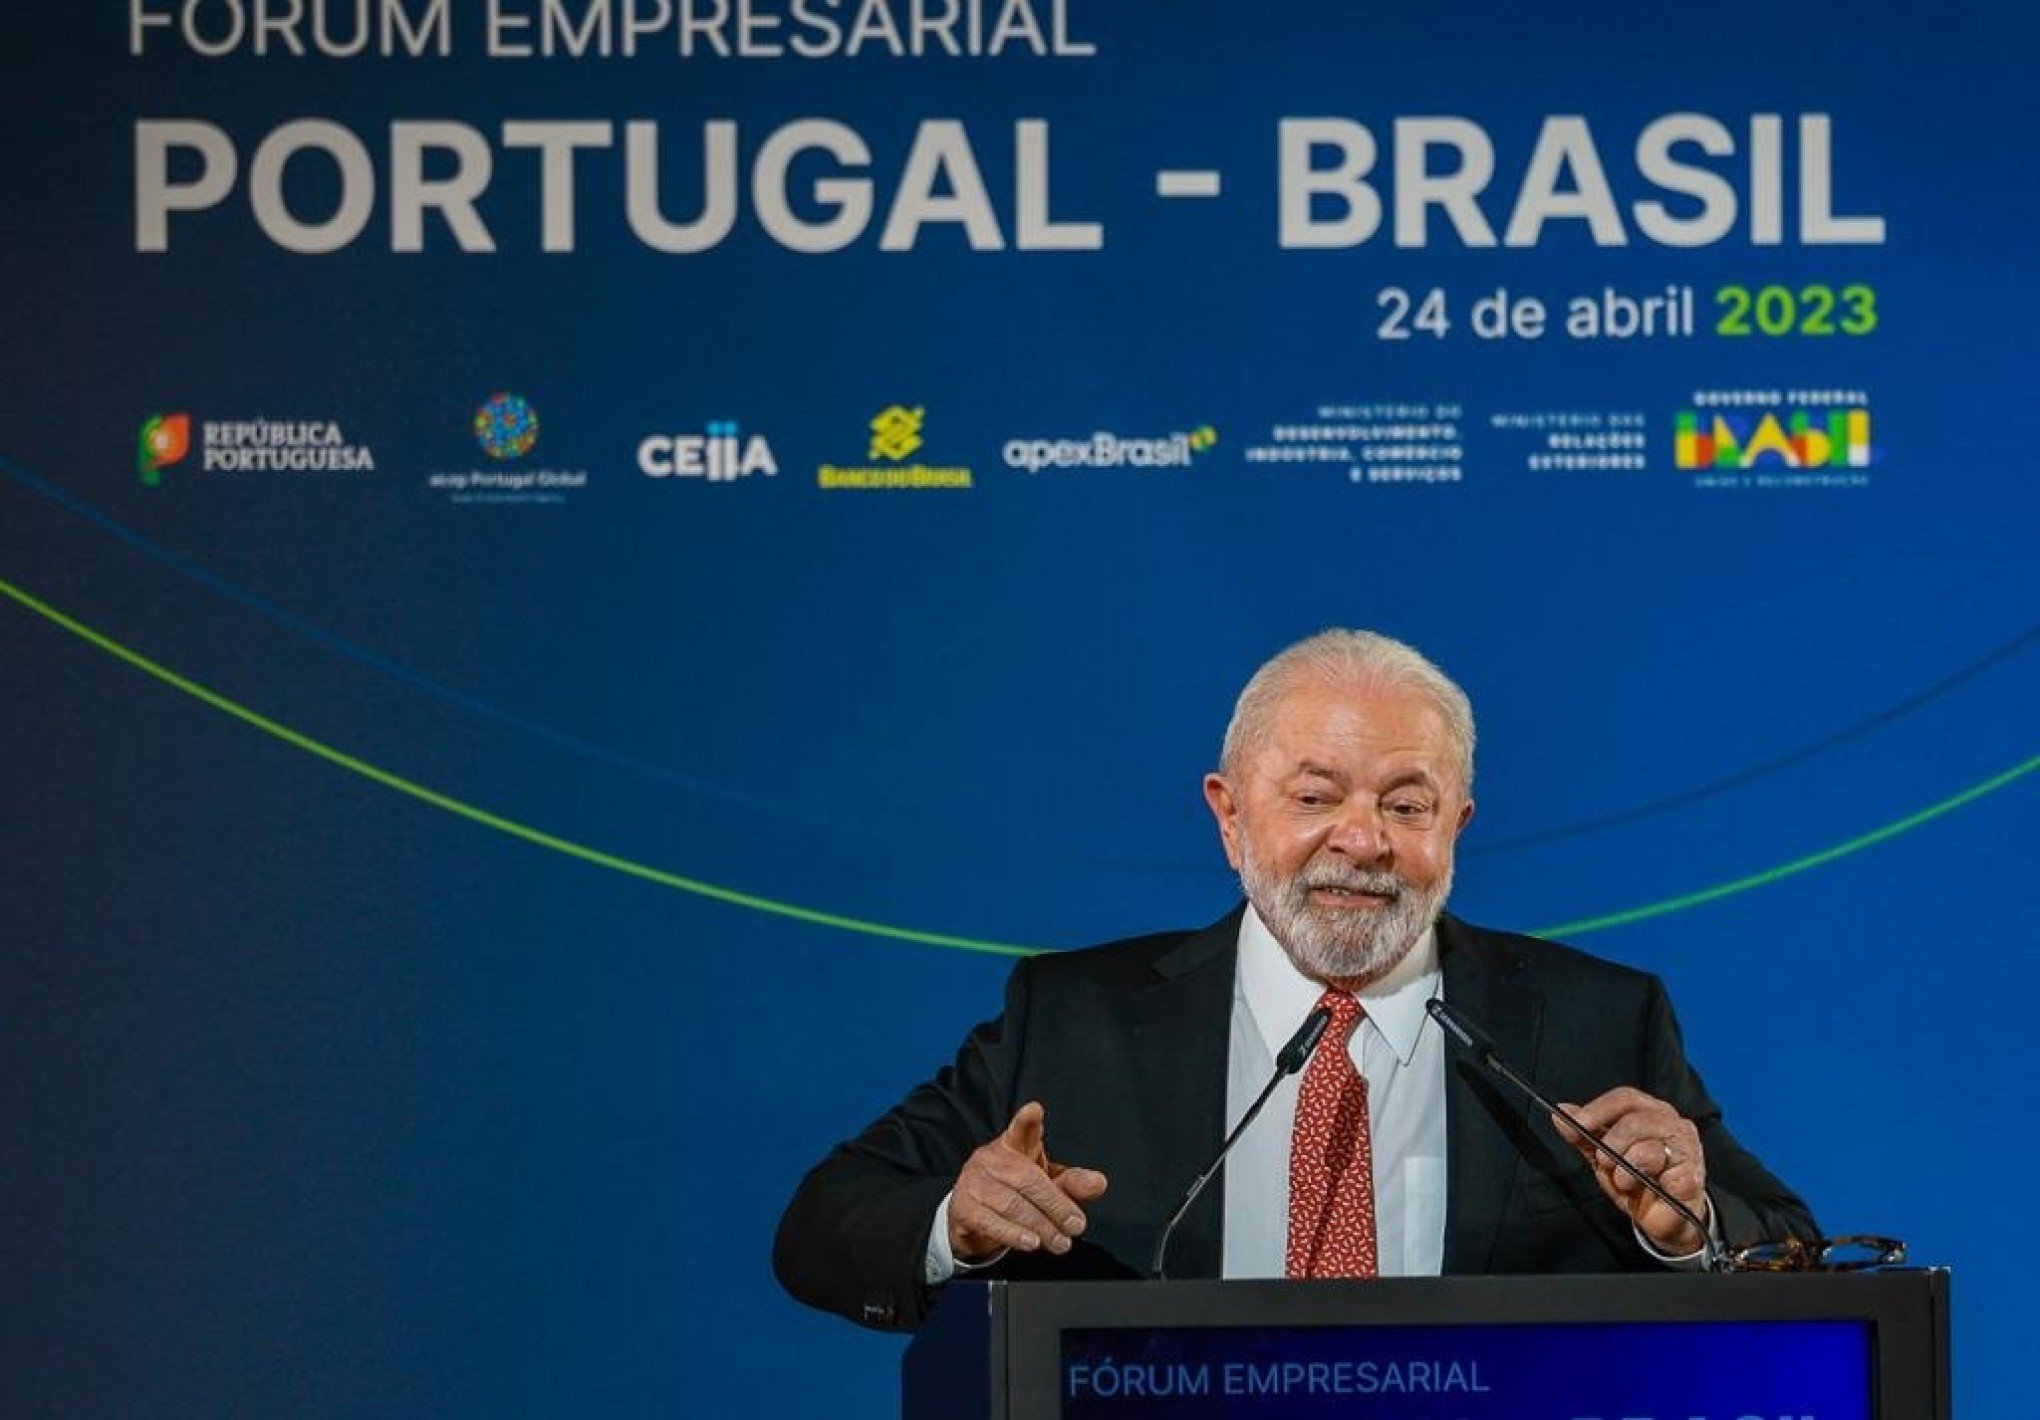 JUROS ALTOS: Lula faz crítica à taxa e fala sobre estratégia para estimular a economia; entenda